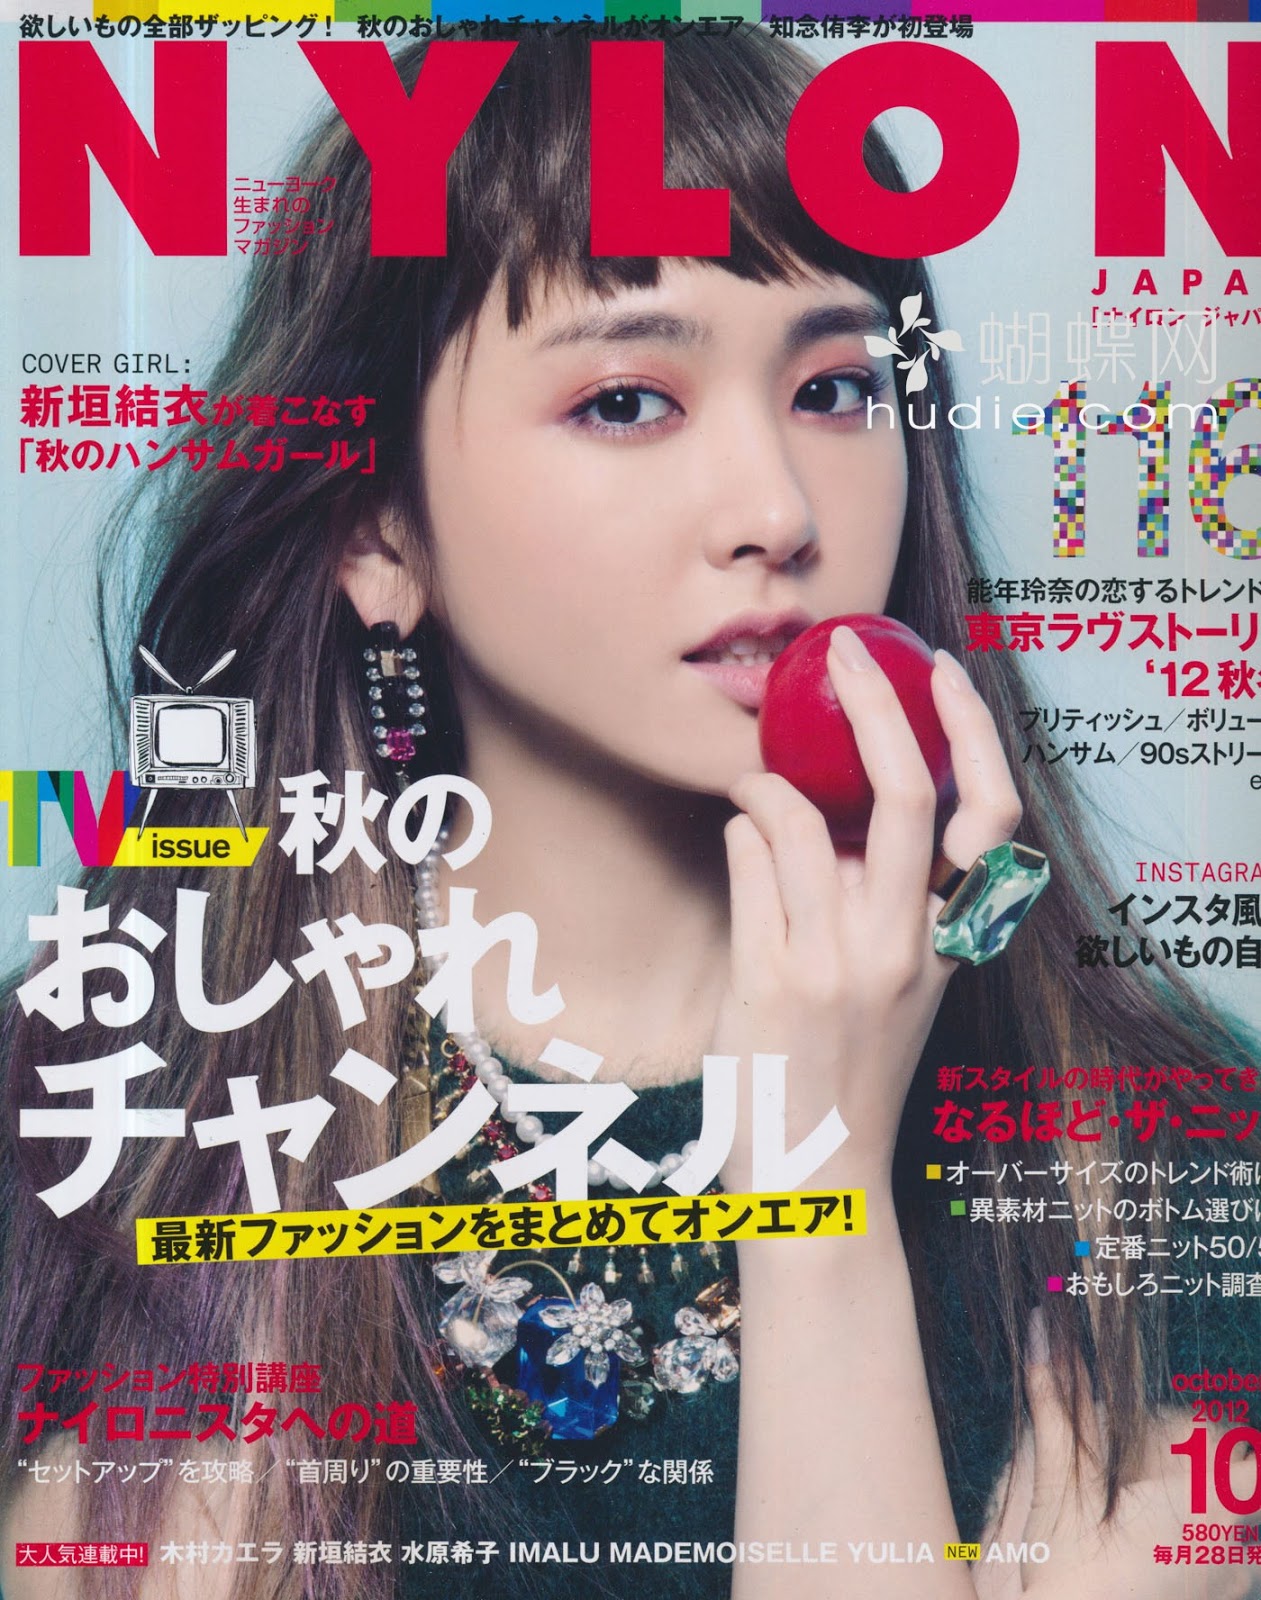 NYLON JAPAN (ナ イ ロ ン ジ ャ パ ン) October 2012 - Icons Magazine Team.